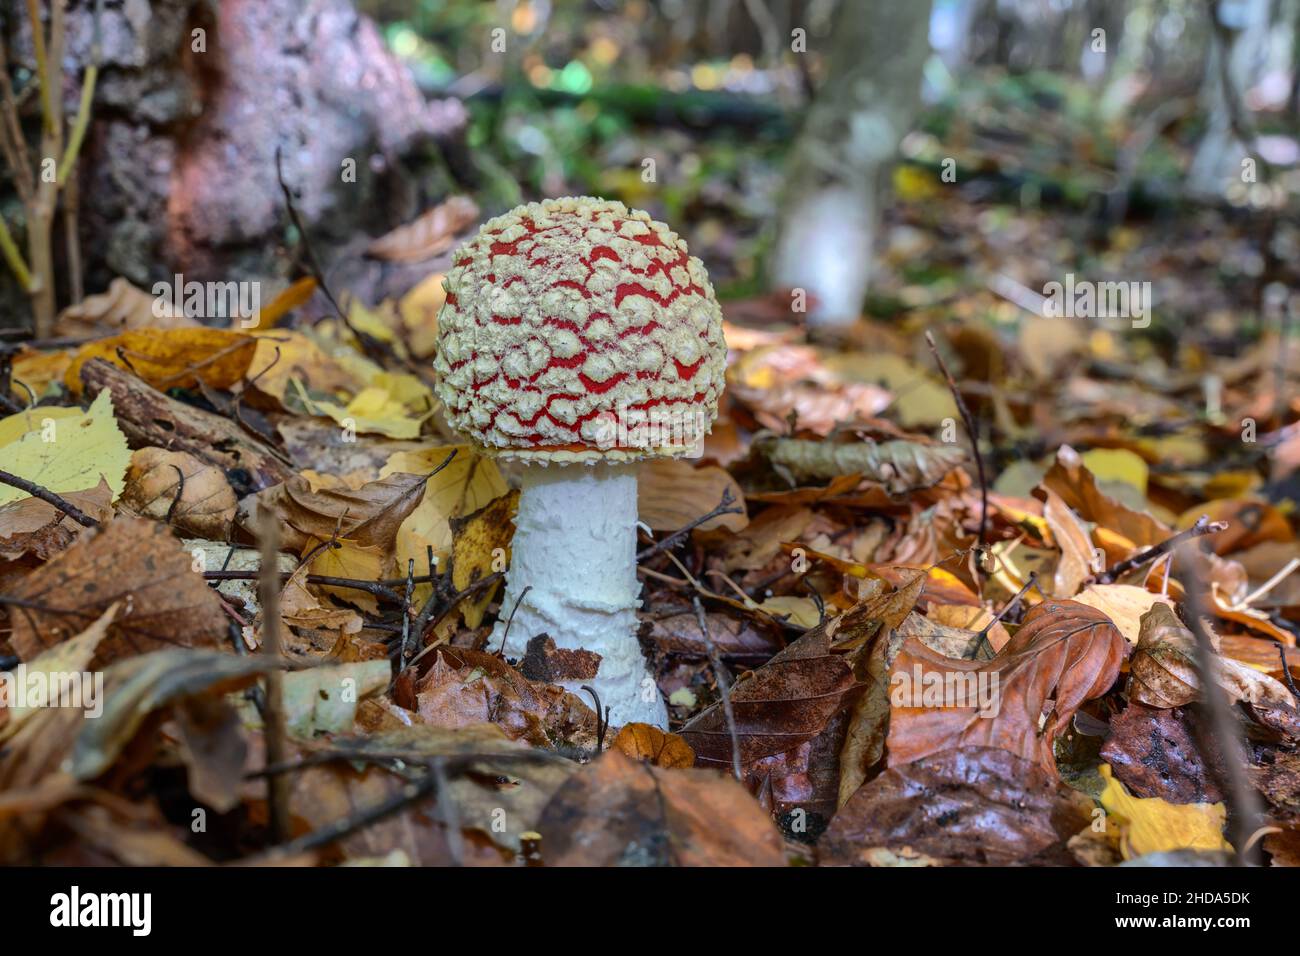 Survolez les champignons agariques (Amanita muscaria) sur le sol de la forêt Banque D'Images